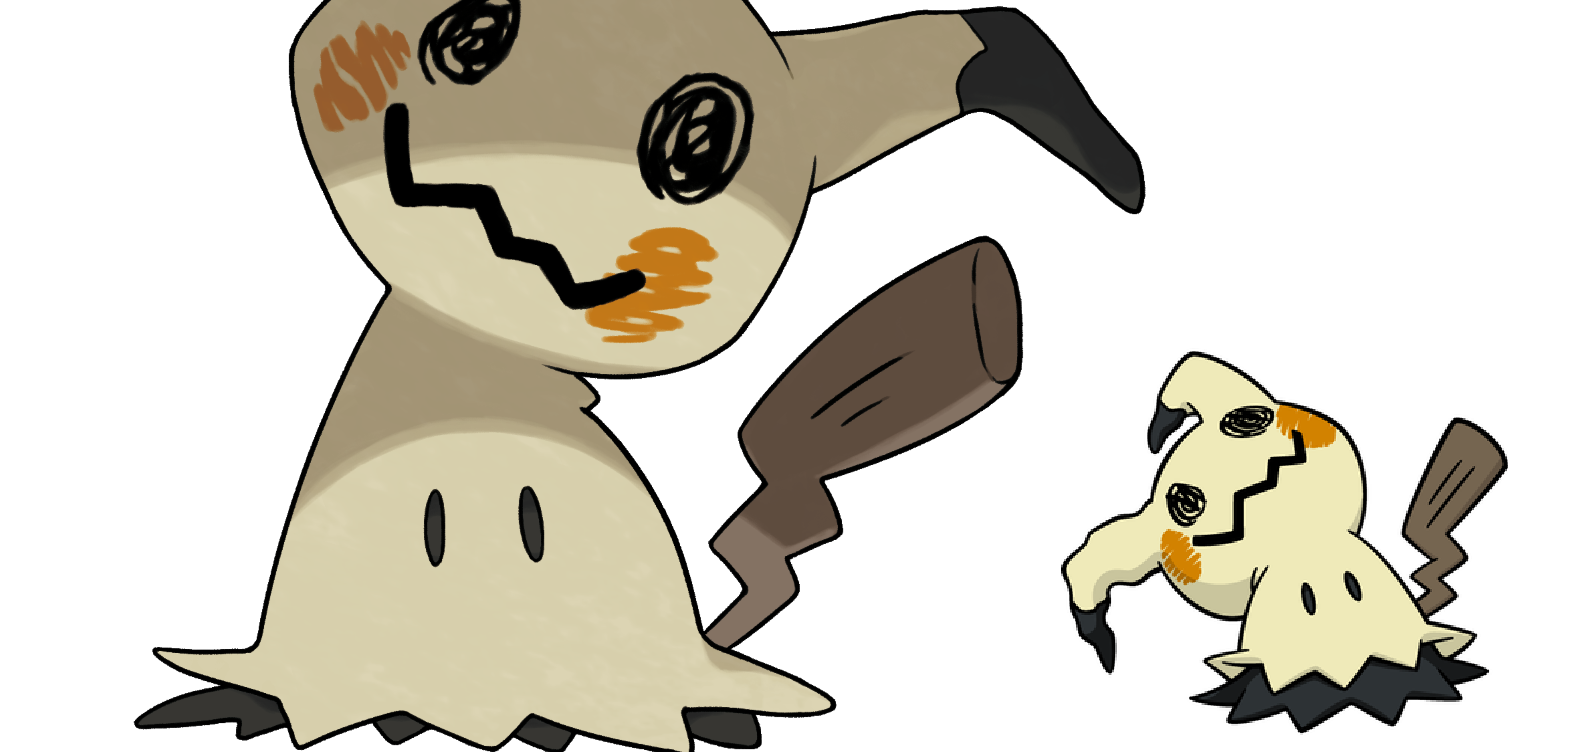 Mundo Pokémon - 105- Marowak (Forma de Alola). Tipo: fogo/fantasma